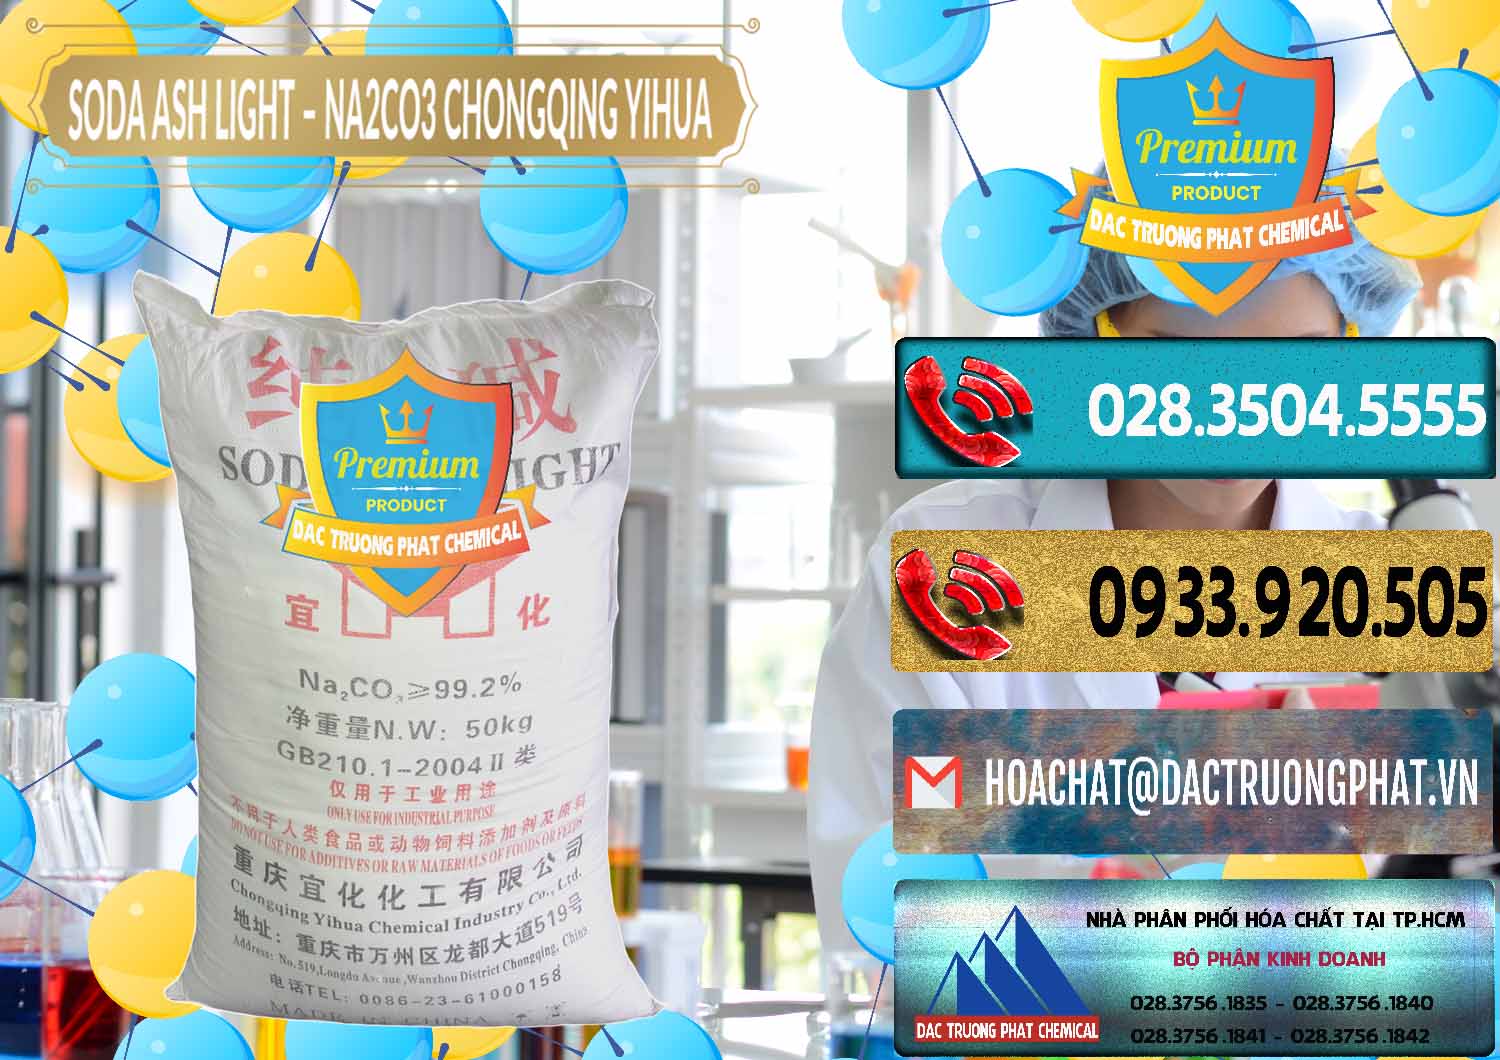 Công ty phân phối - bán Soda Ash Light - NA2CO3 Chongqing Yihua Trung Quốc China - 0129 - Đơn vị cung ứng & phân phối hóa chất tại TP.HCM - hoachatdetnhuom.com